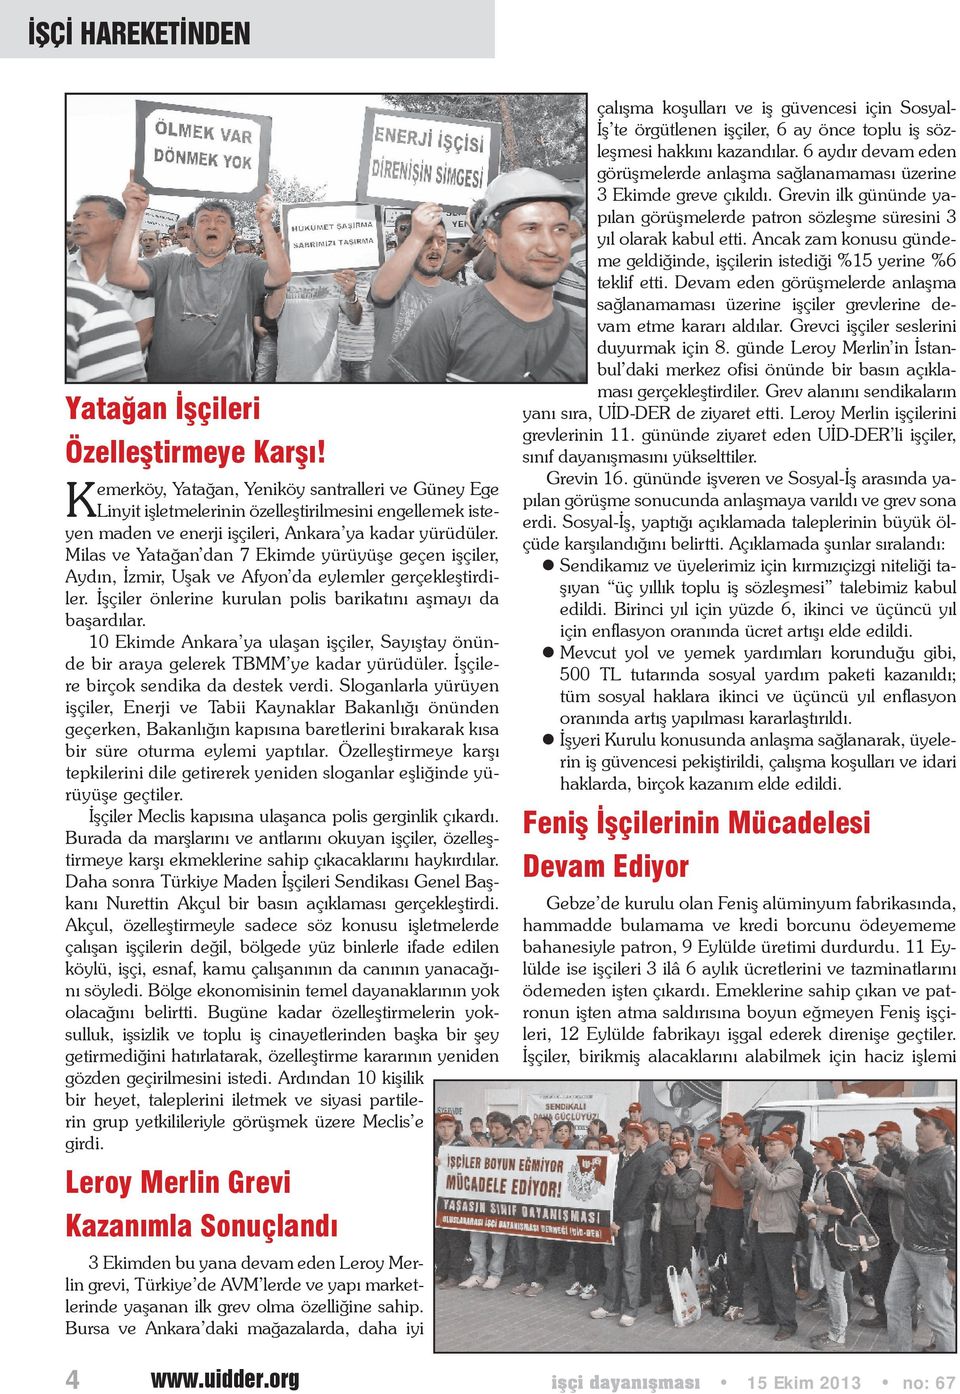 Milas ve Yatağan dan 7 Ekimde yürüyüşe geçen işçiler, Aydın, İzmir, Uşak ve Afyon da eylemler gerçekleştirdiler. İşçiler önlerine kurulan polis barikatını aşmayı da başardılar.